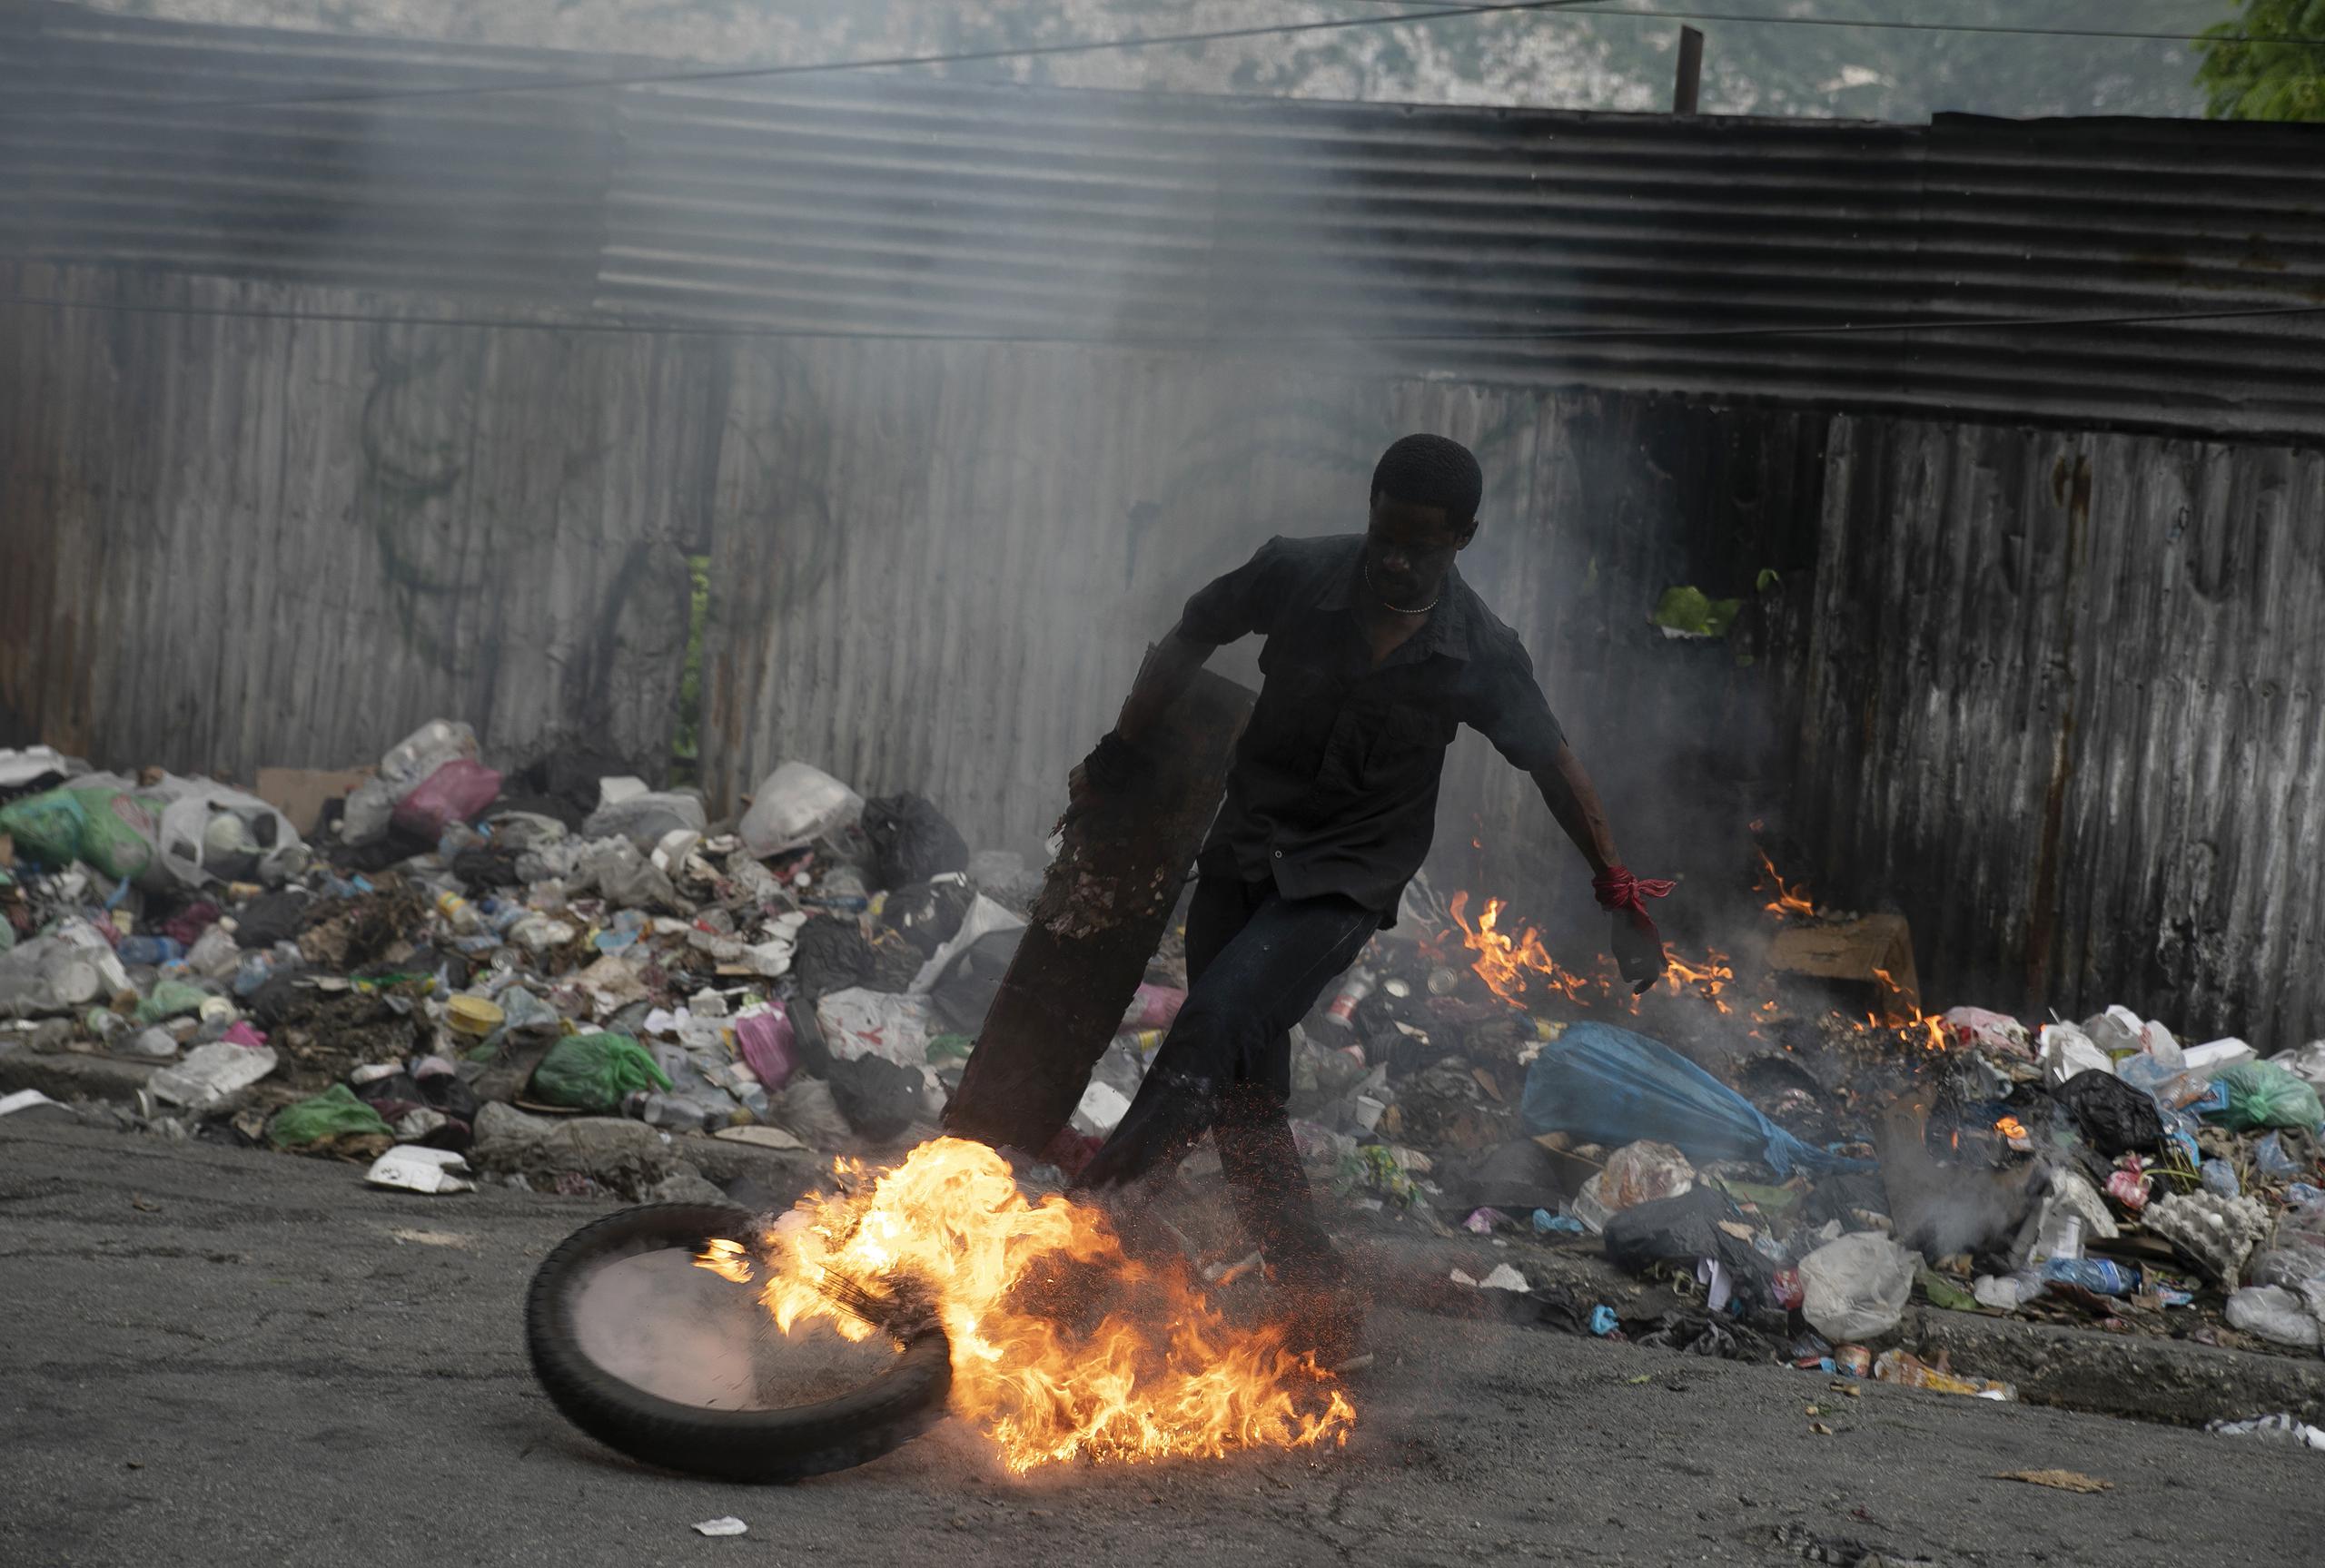 Haití está sumido en una profunda crisis agravada tras el asesinato del expresidente Jovenel Moïse. (AP Foto)